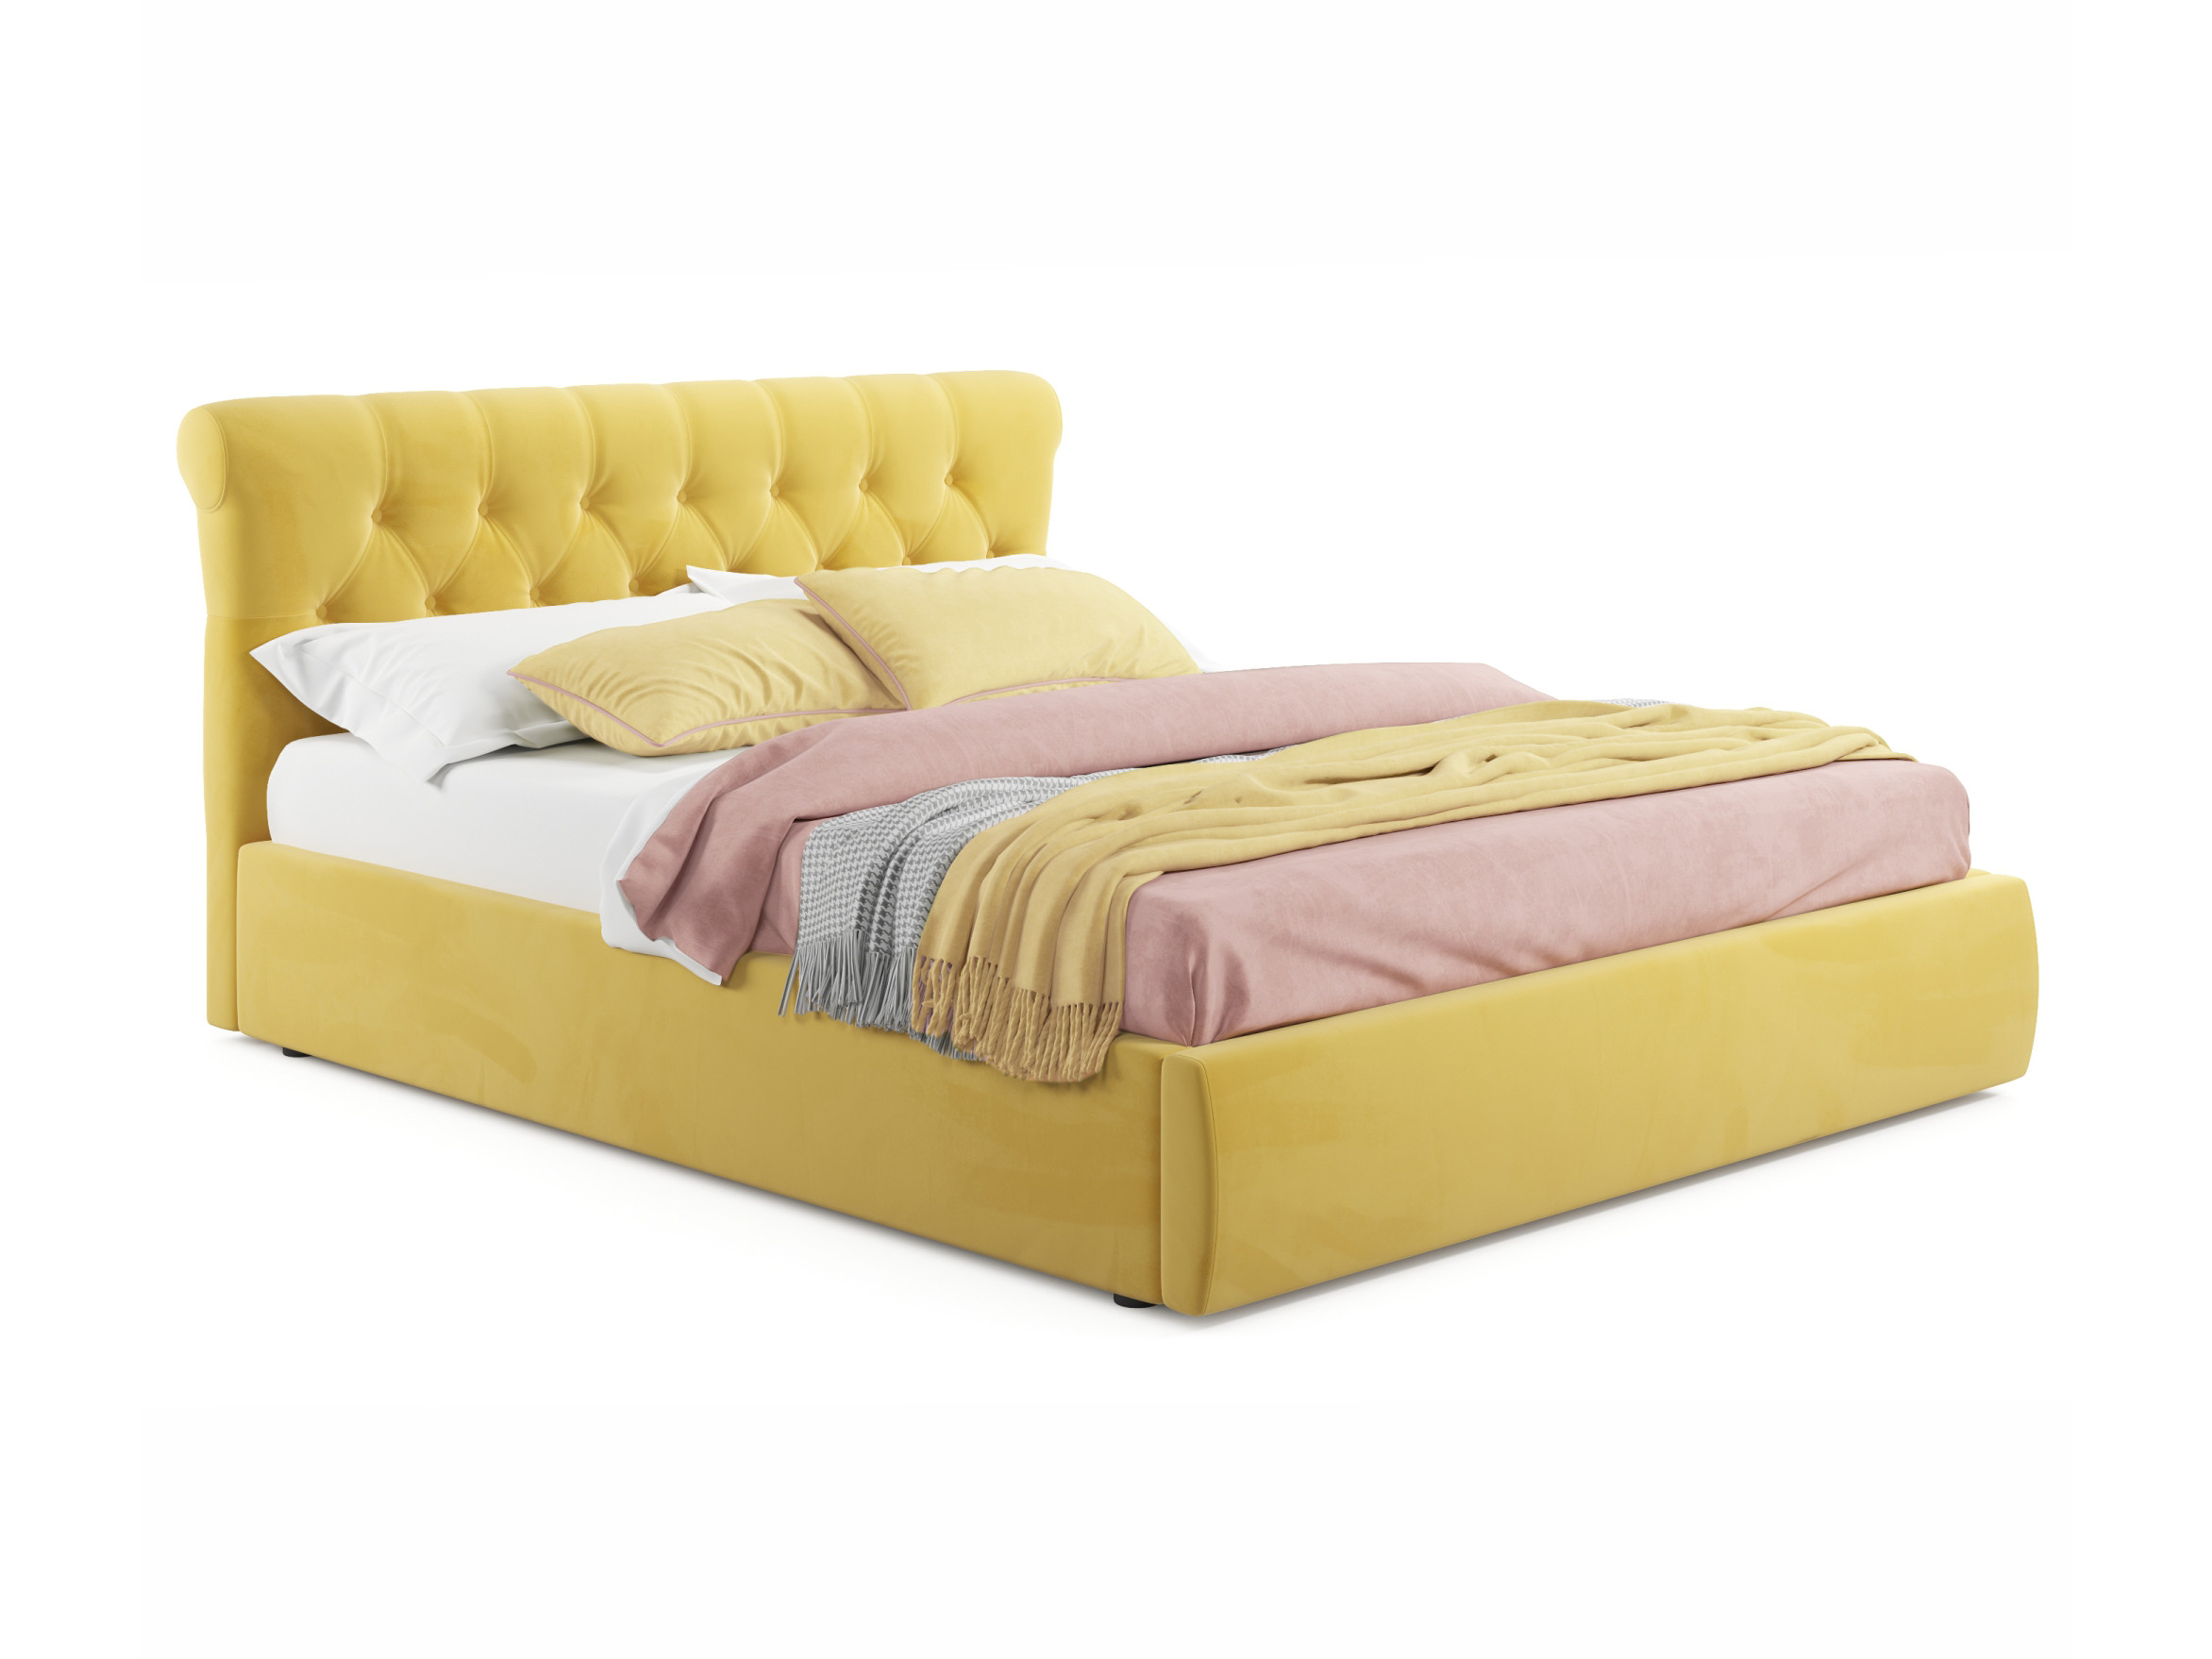 Мягкая кровать Ameli 1800 желтая с подъемным механизмом желтый, Желтый, Велюр, ДСП